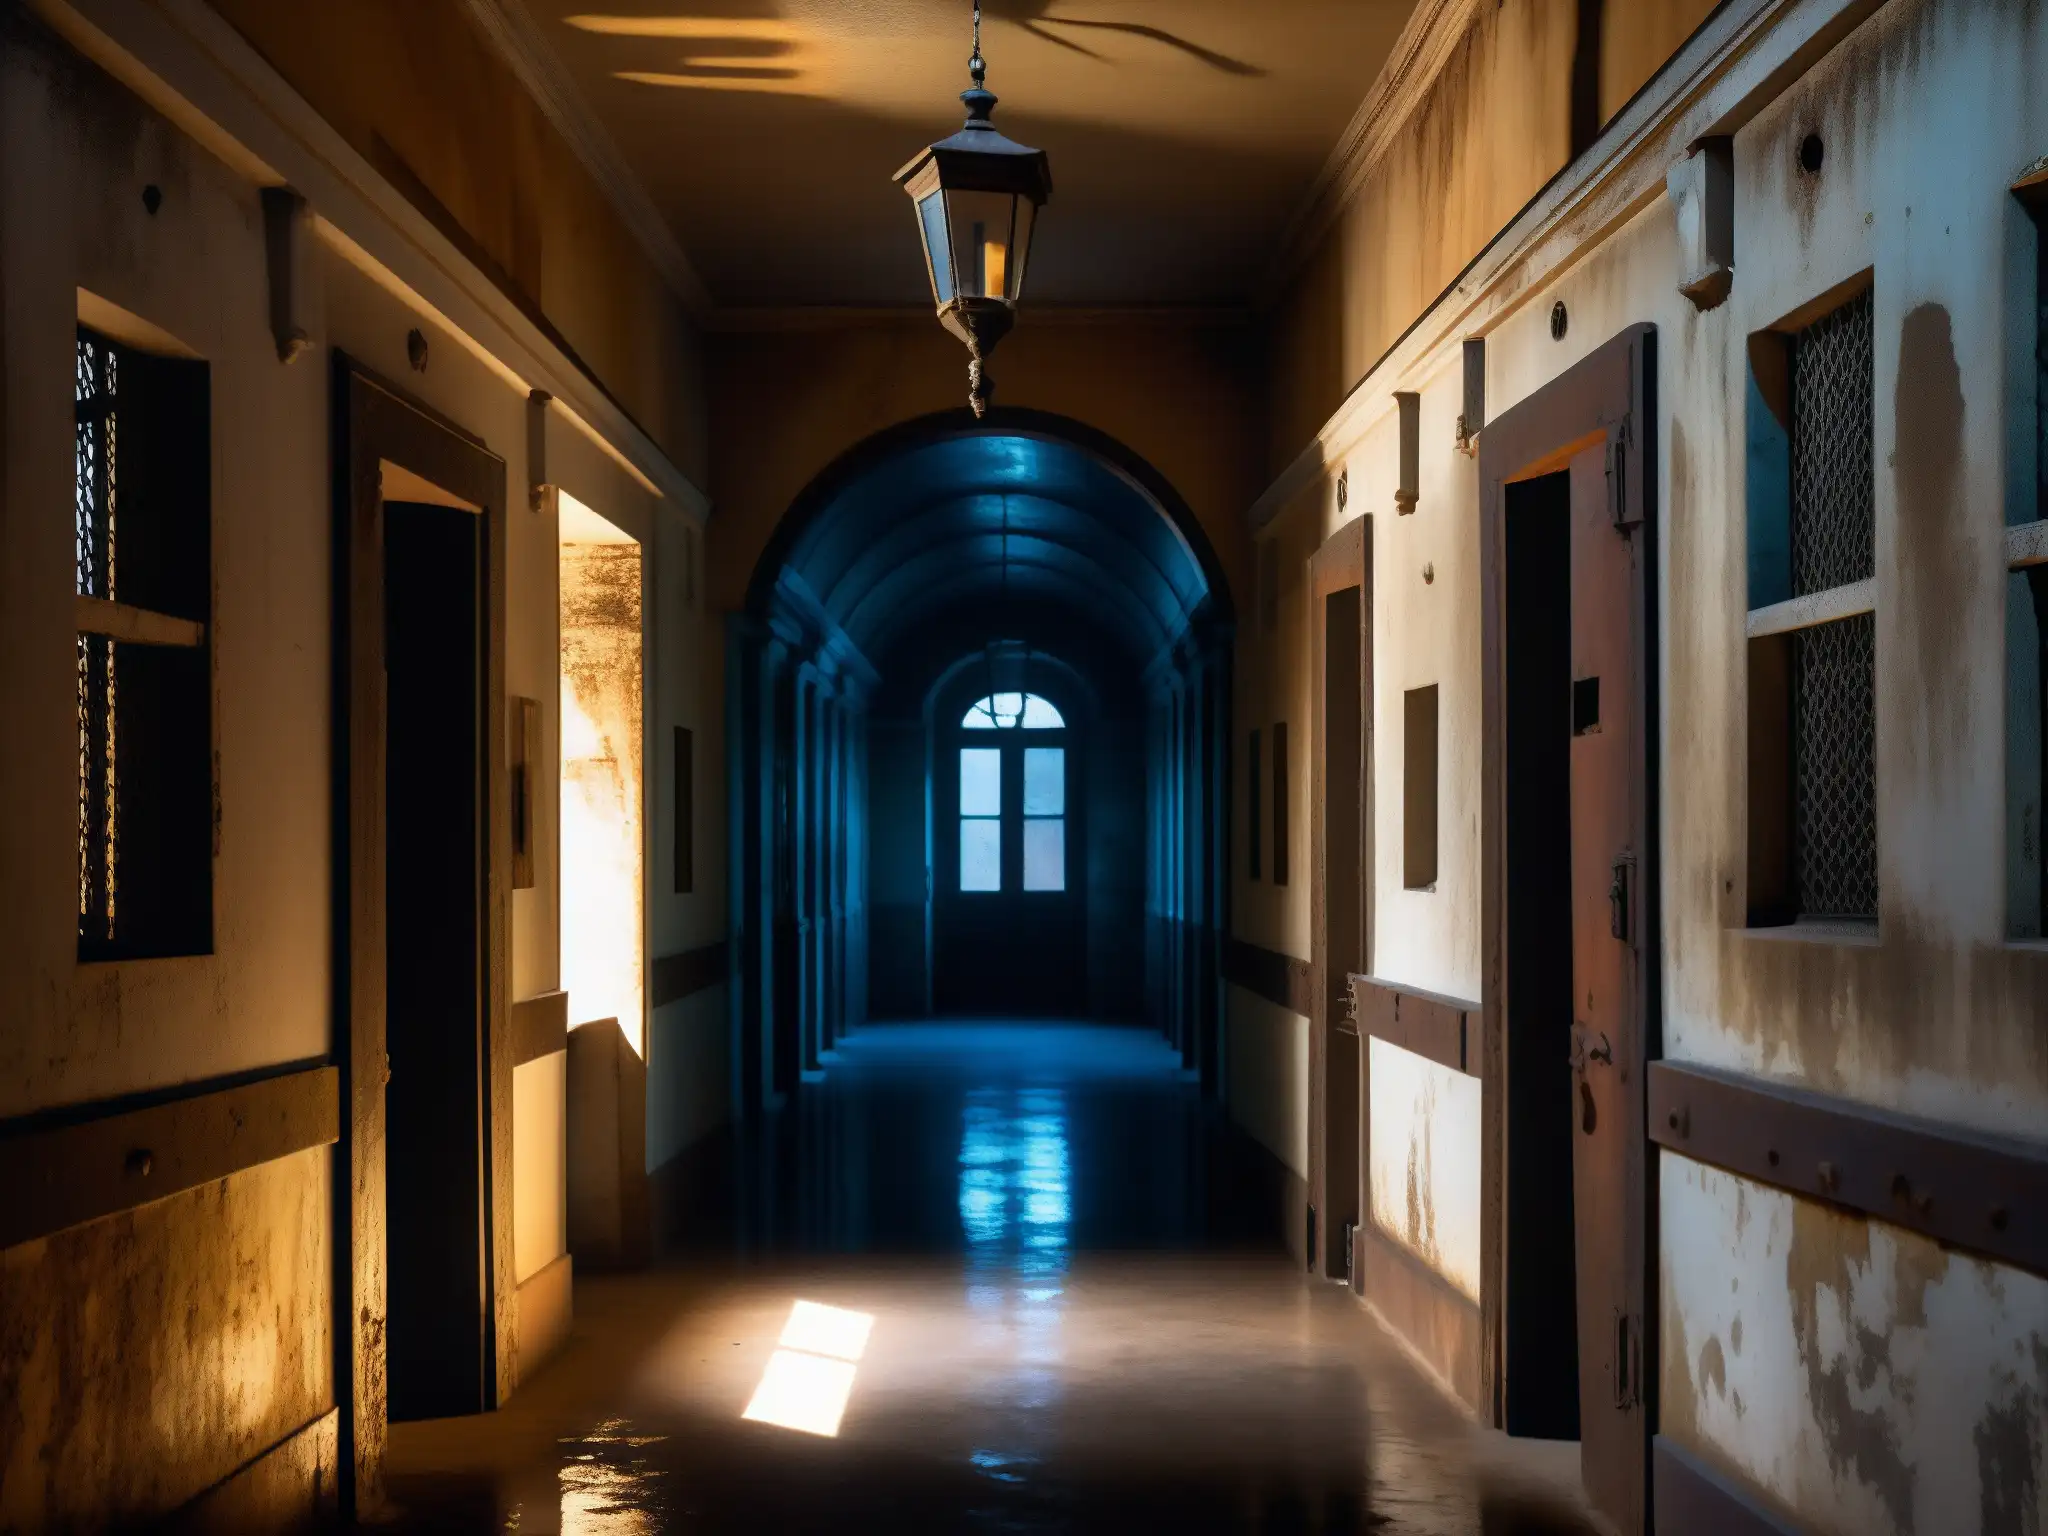 Interior del Palacio de Lecumberri, antigua prisión, con puertas oxidadas y pintura descascarada